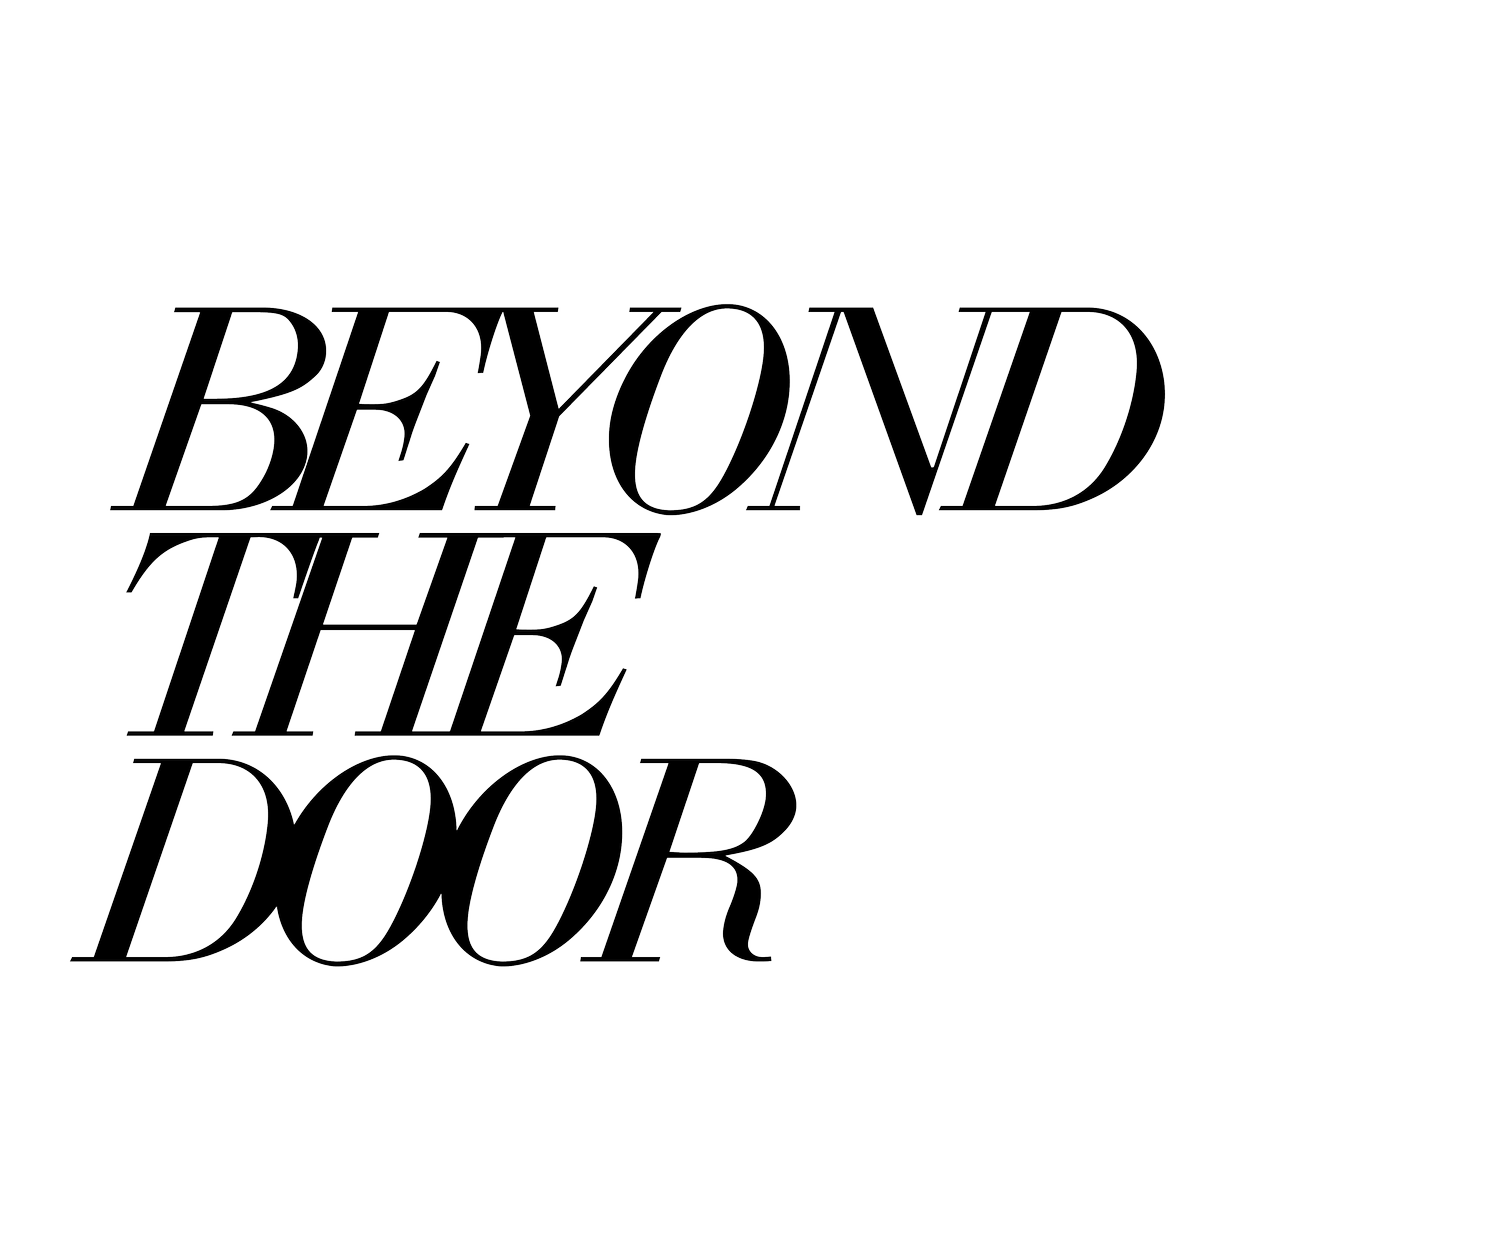 Beyond The Door